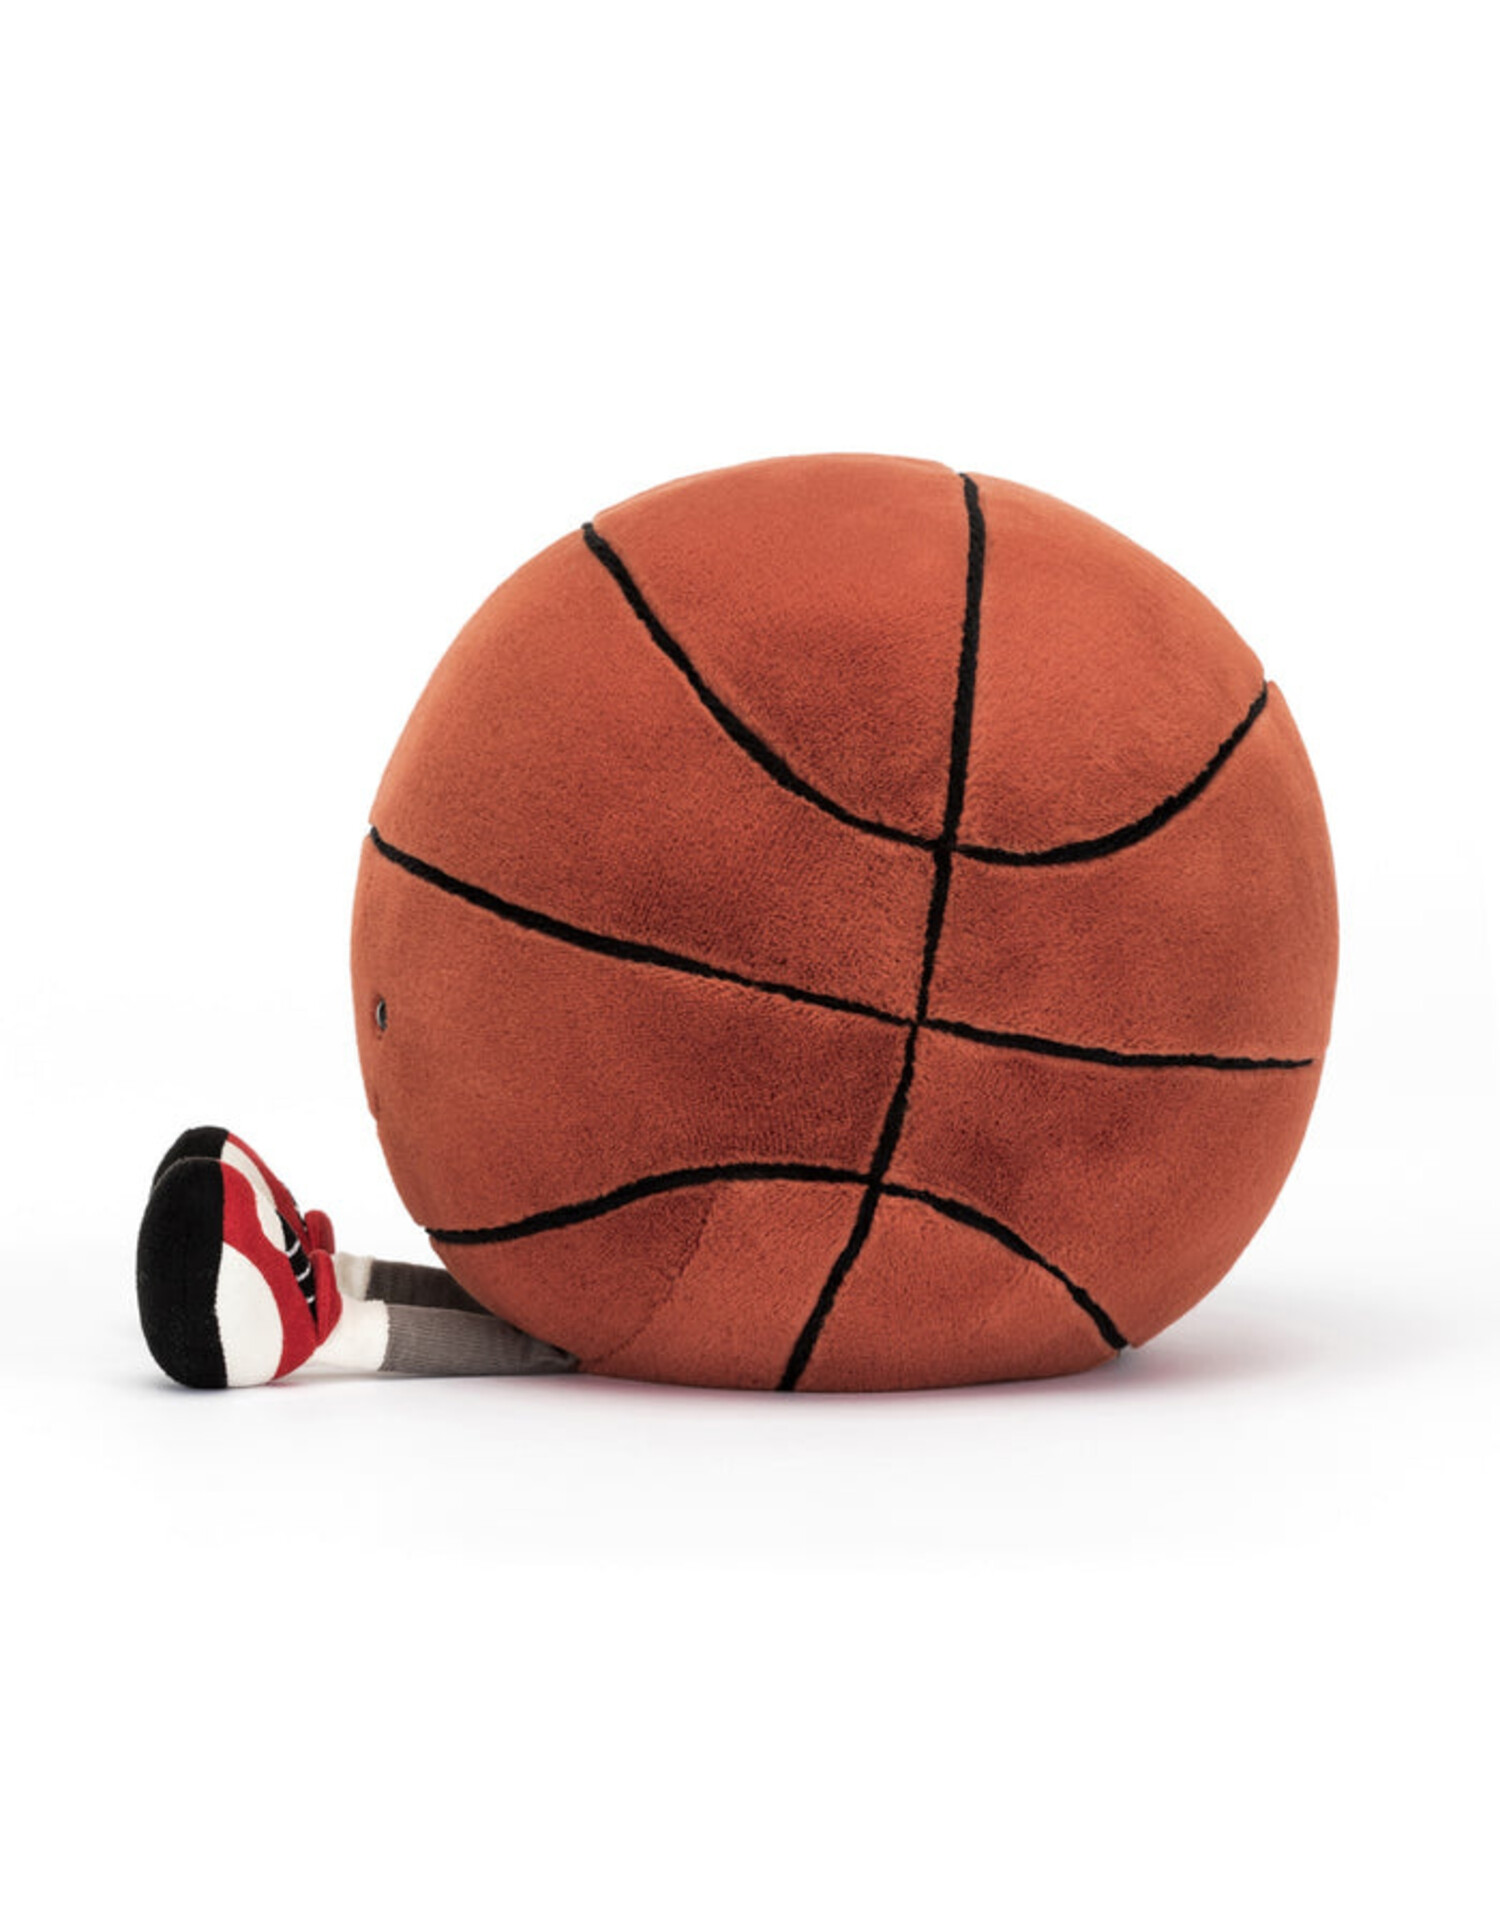 https://cdn.shoplightspeed.com/shops/611883/files/54985621/1500x4000x3/jellycat-peluche-ballon-de-basketball-amusant.jpg